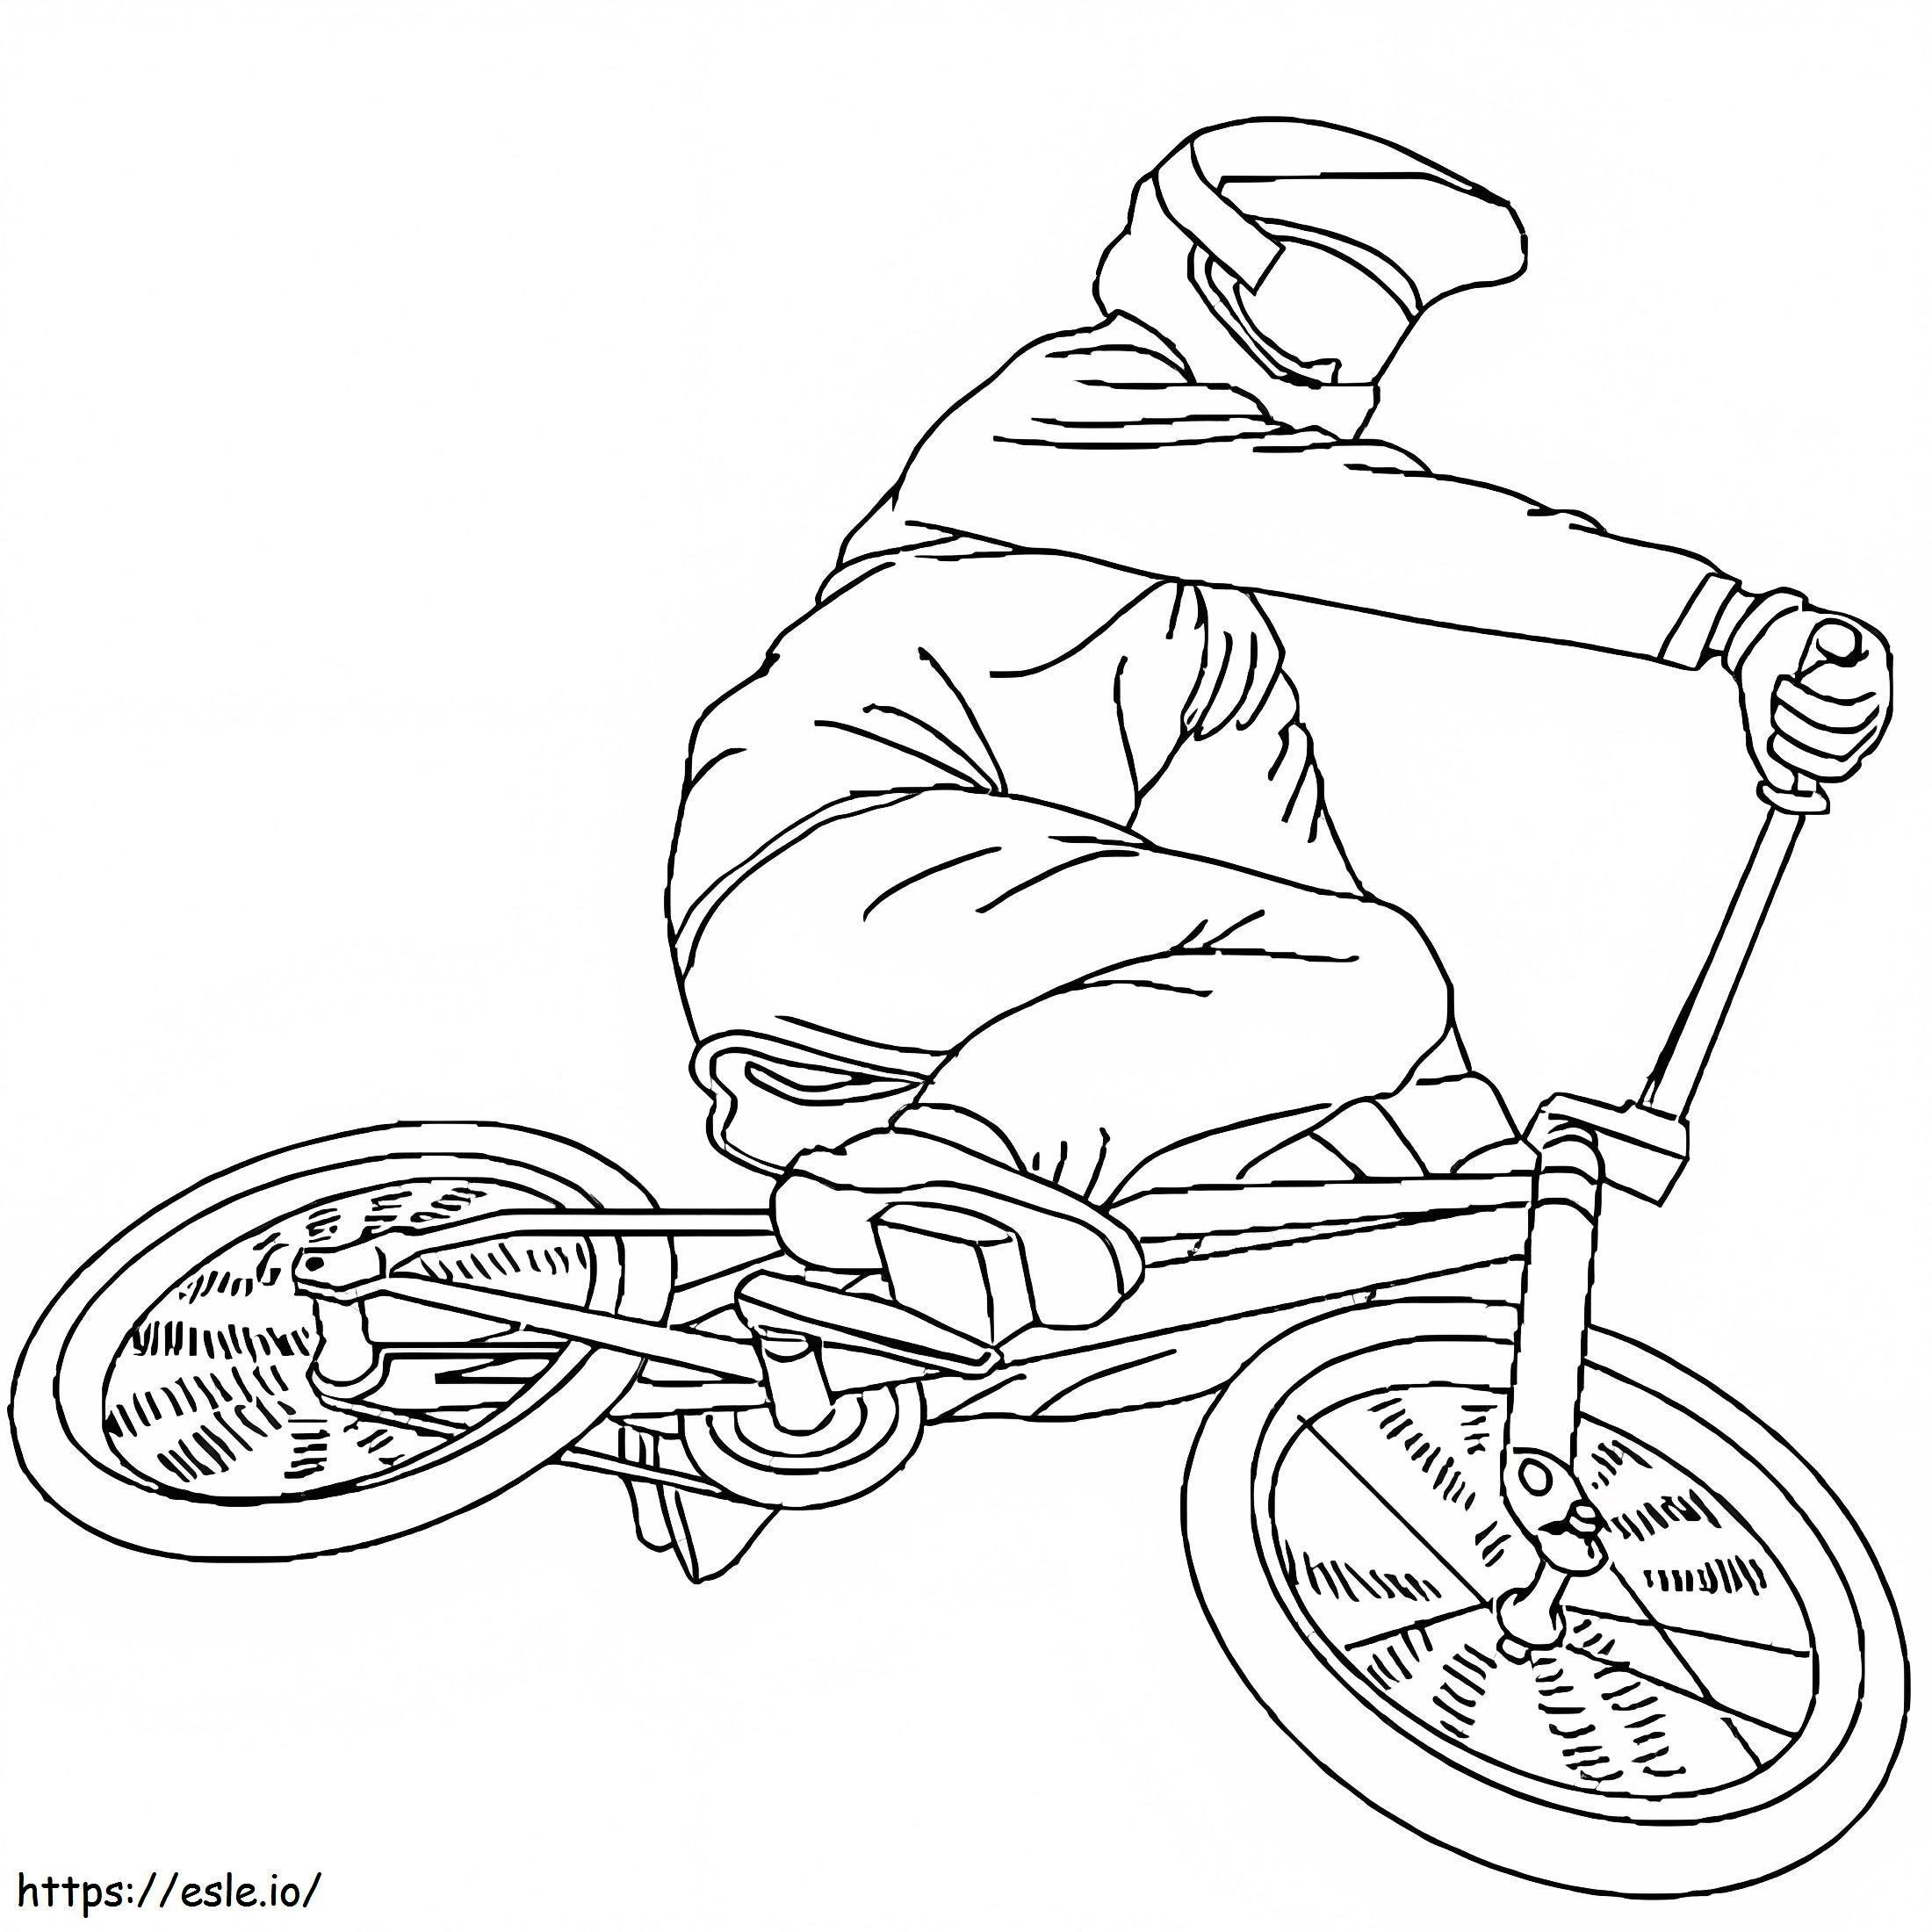 Bicicleta BMX para colorear